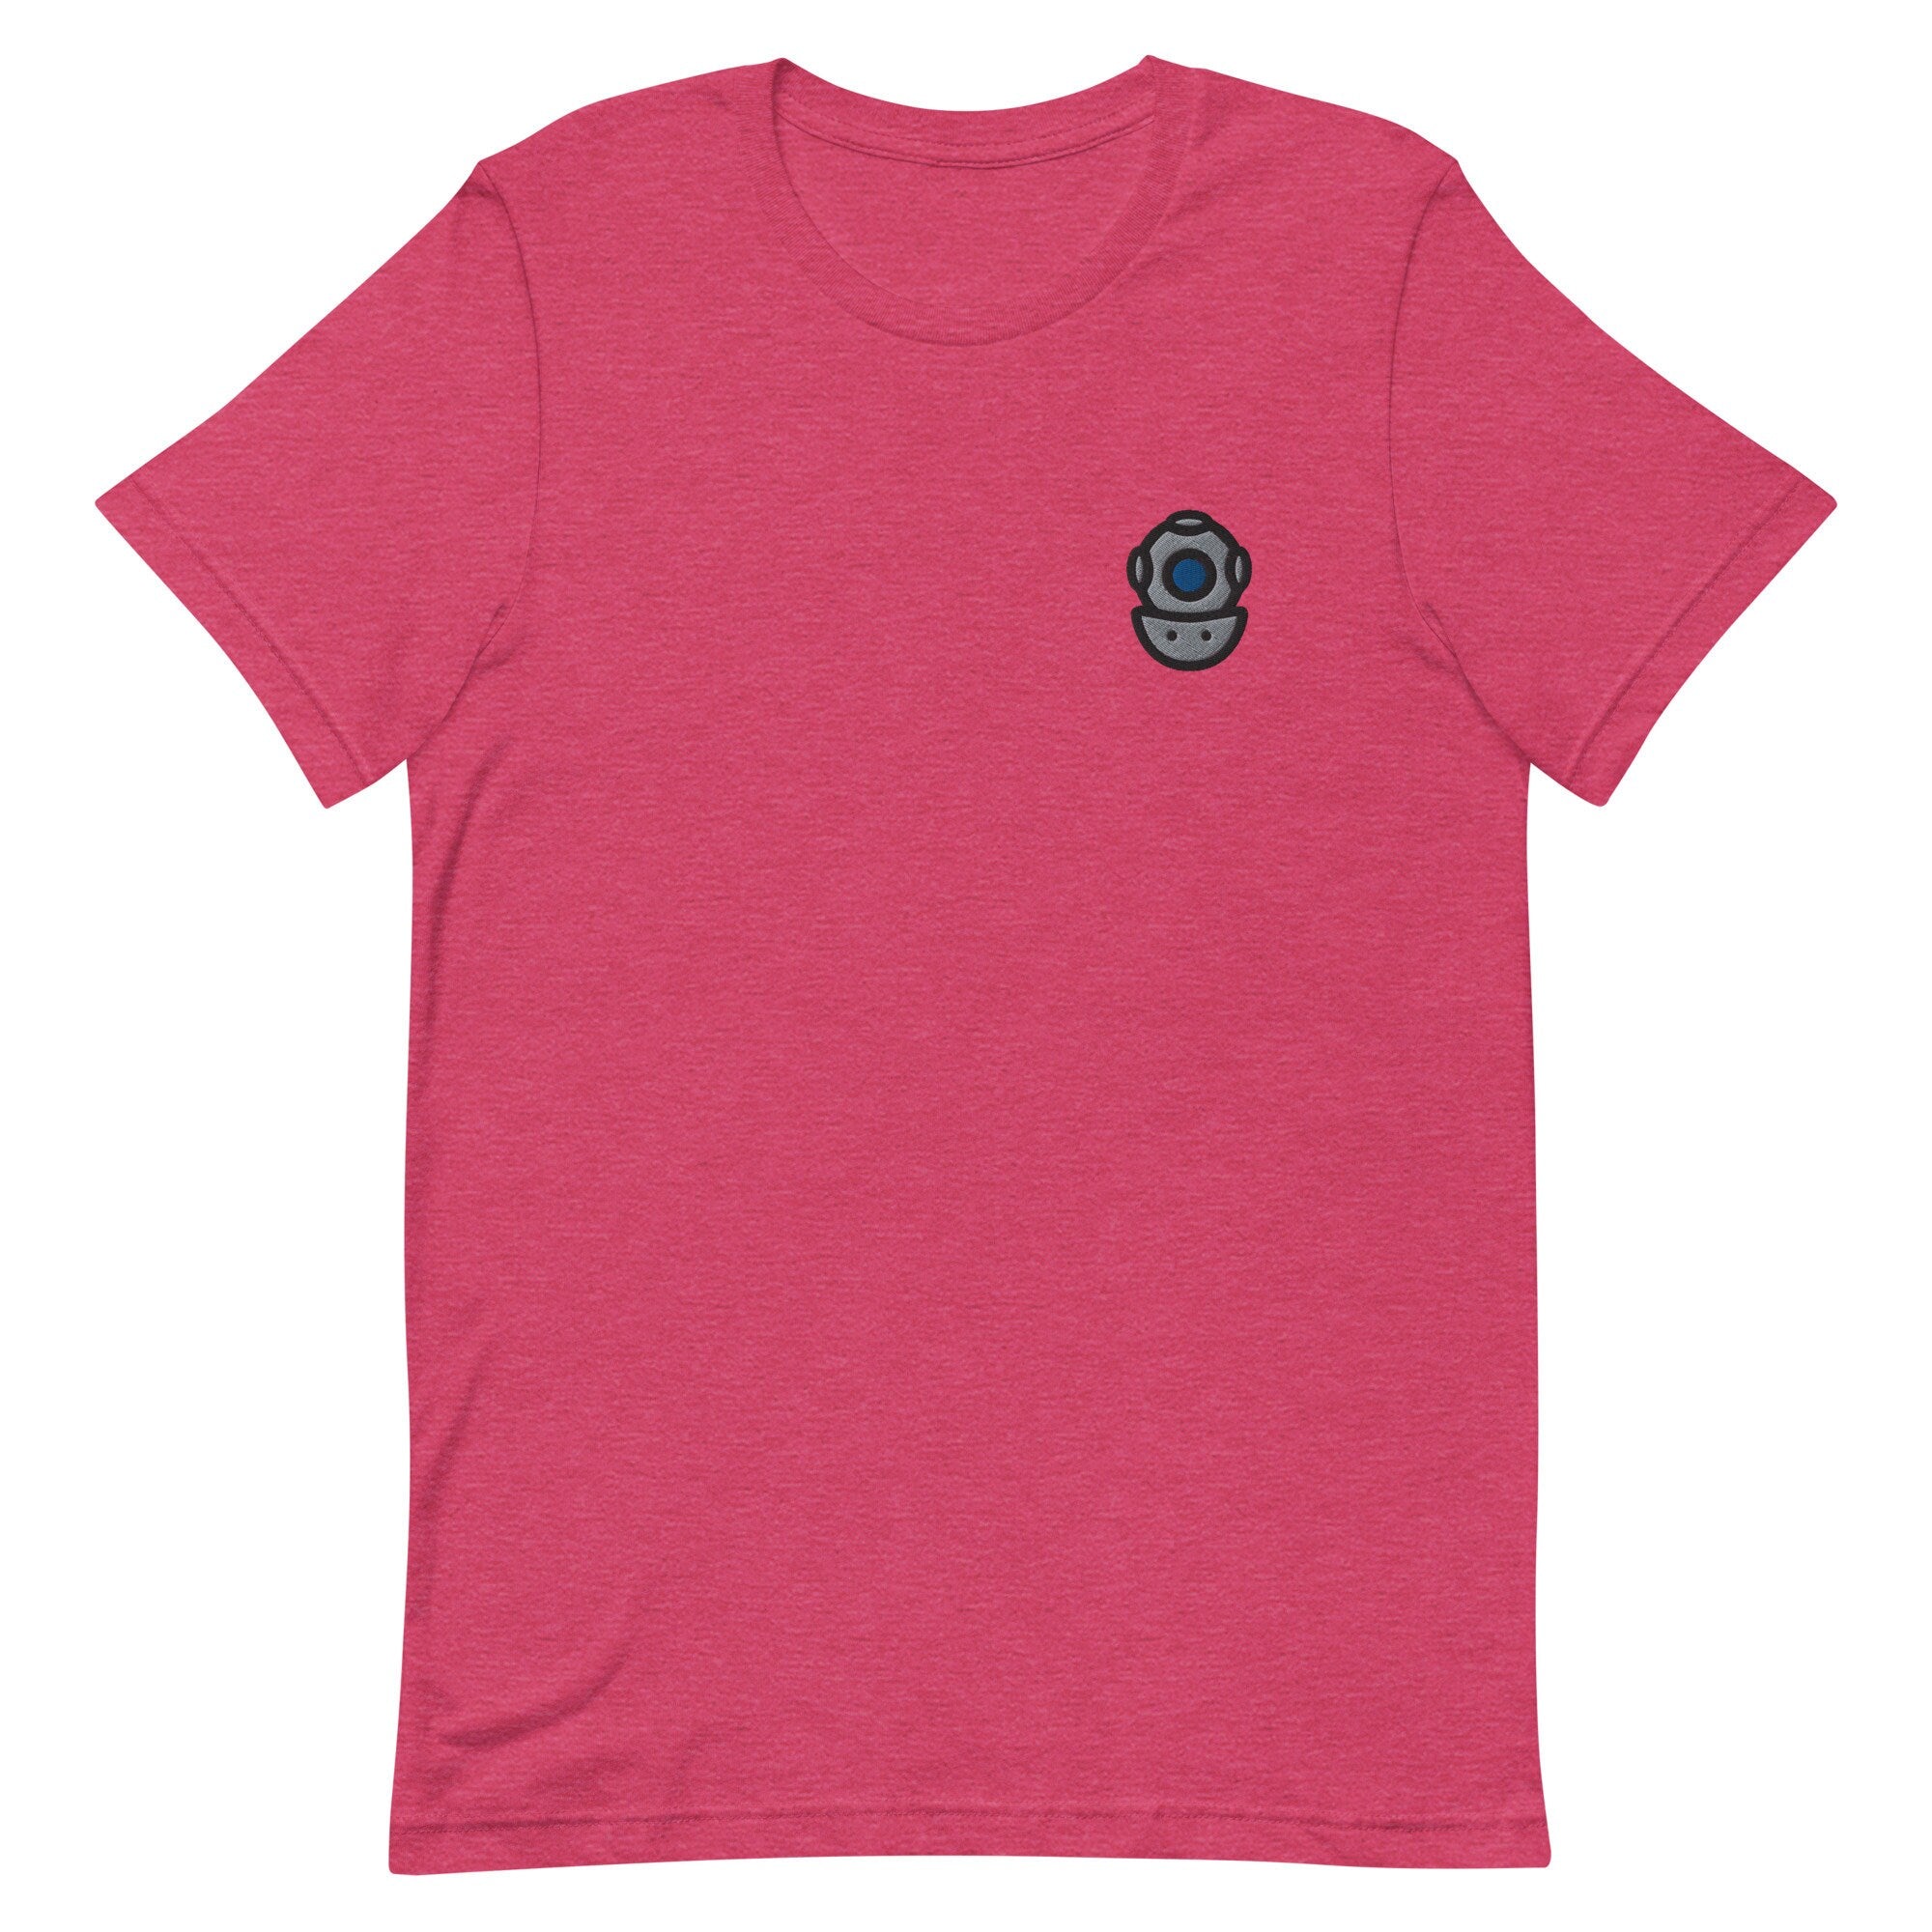 Scuba Helmet Premium Men's T-Shirt, Embroidered Men's T-Shirt Gift for Boyfriend, Men's Short Sleeve Shirt - Multiple Colors